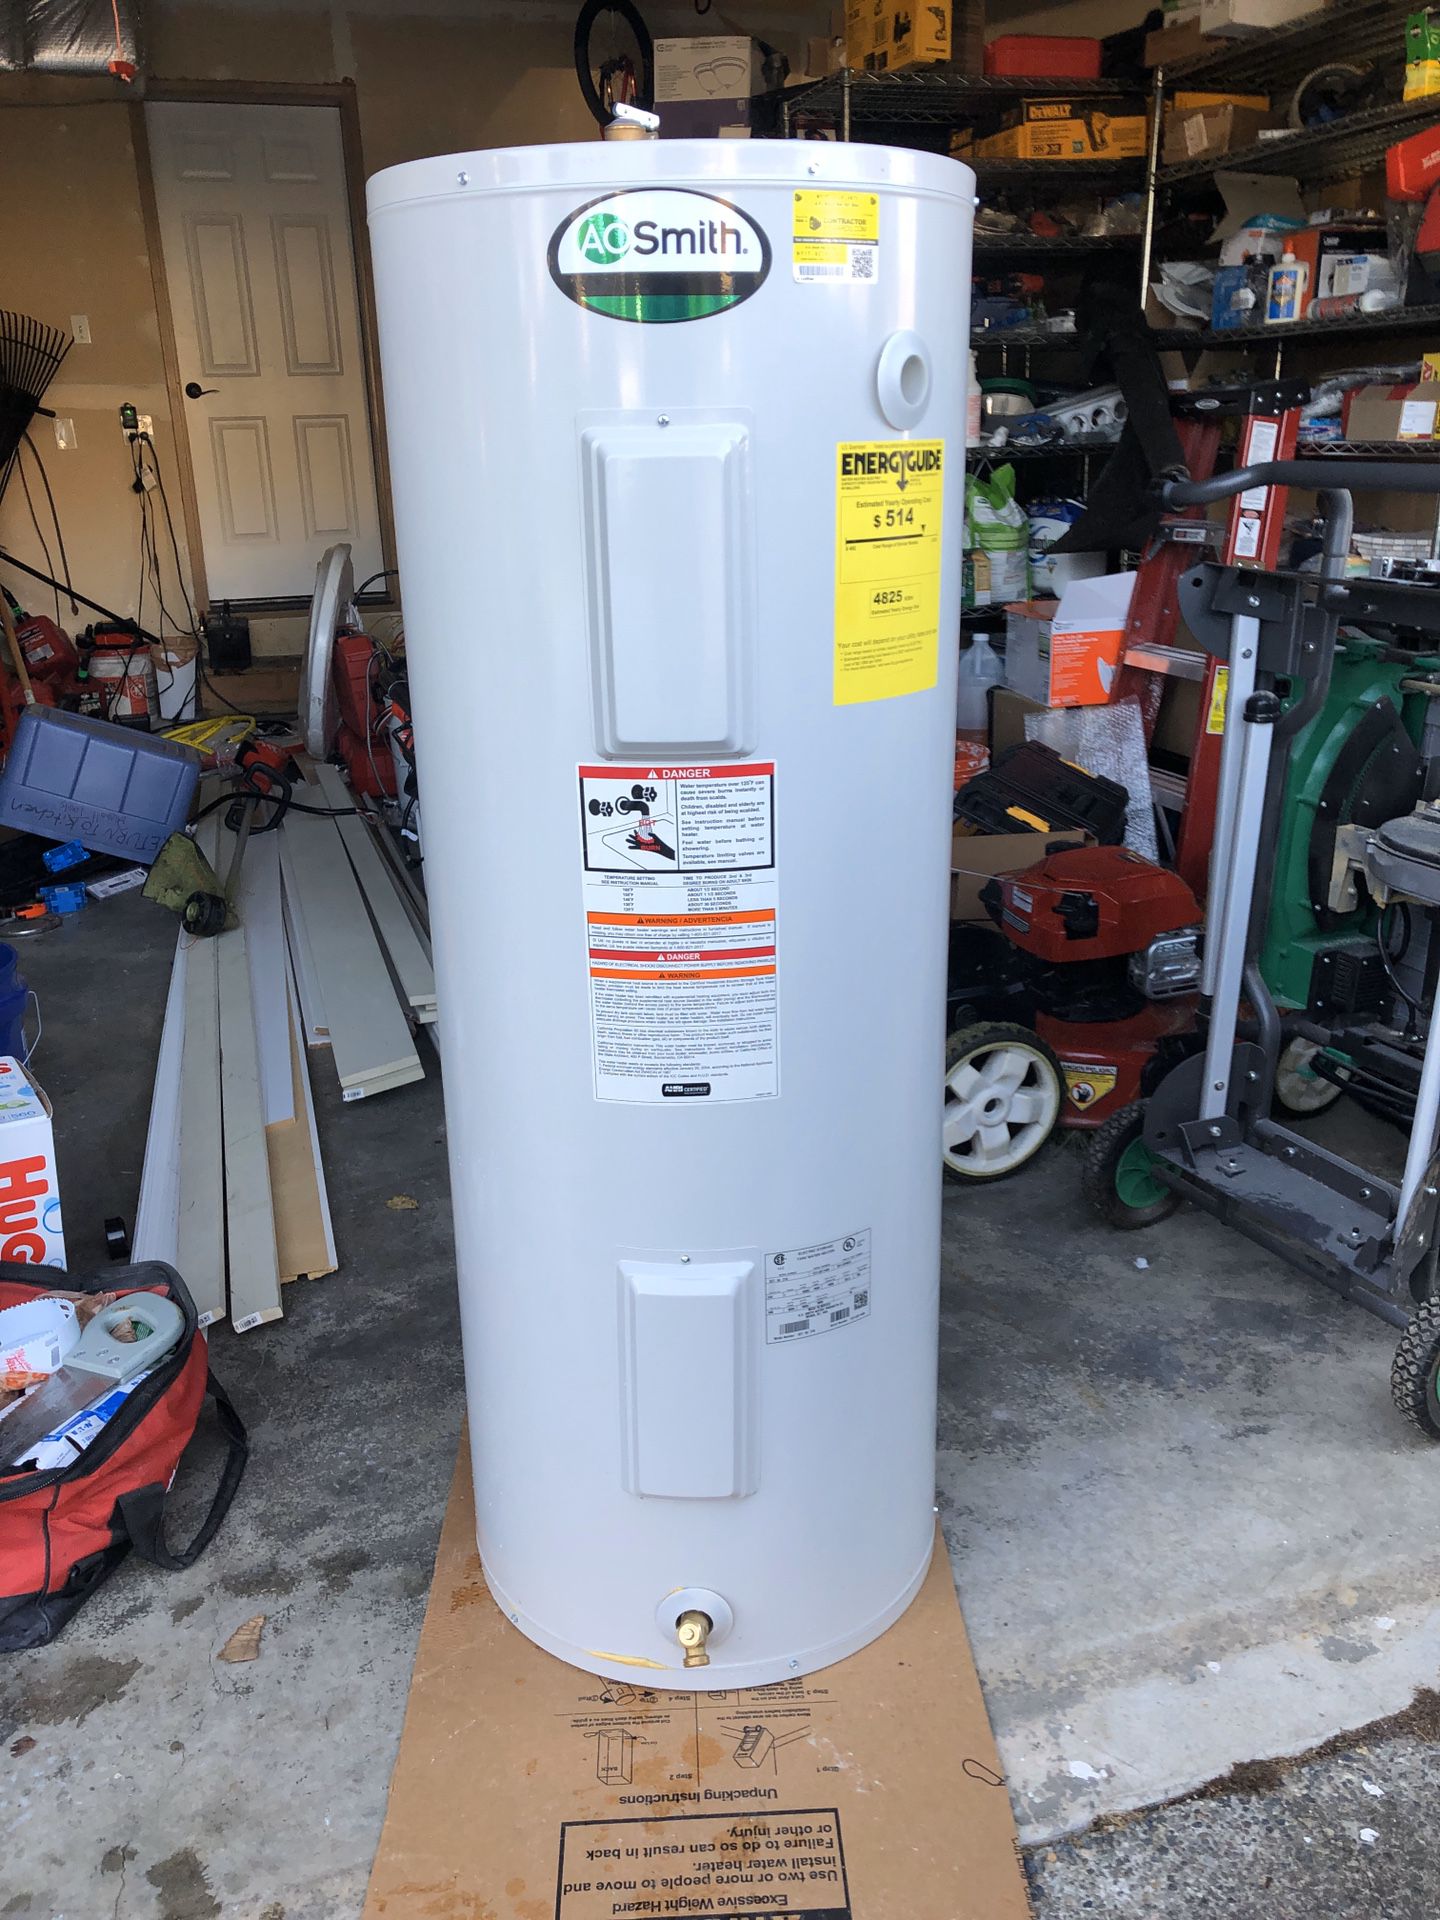 AO Smith 50 gallon electric hot water heater